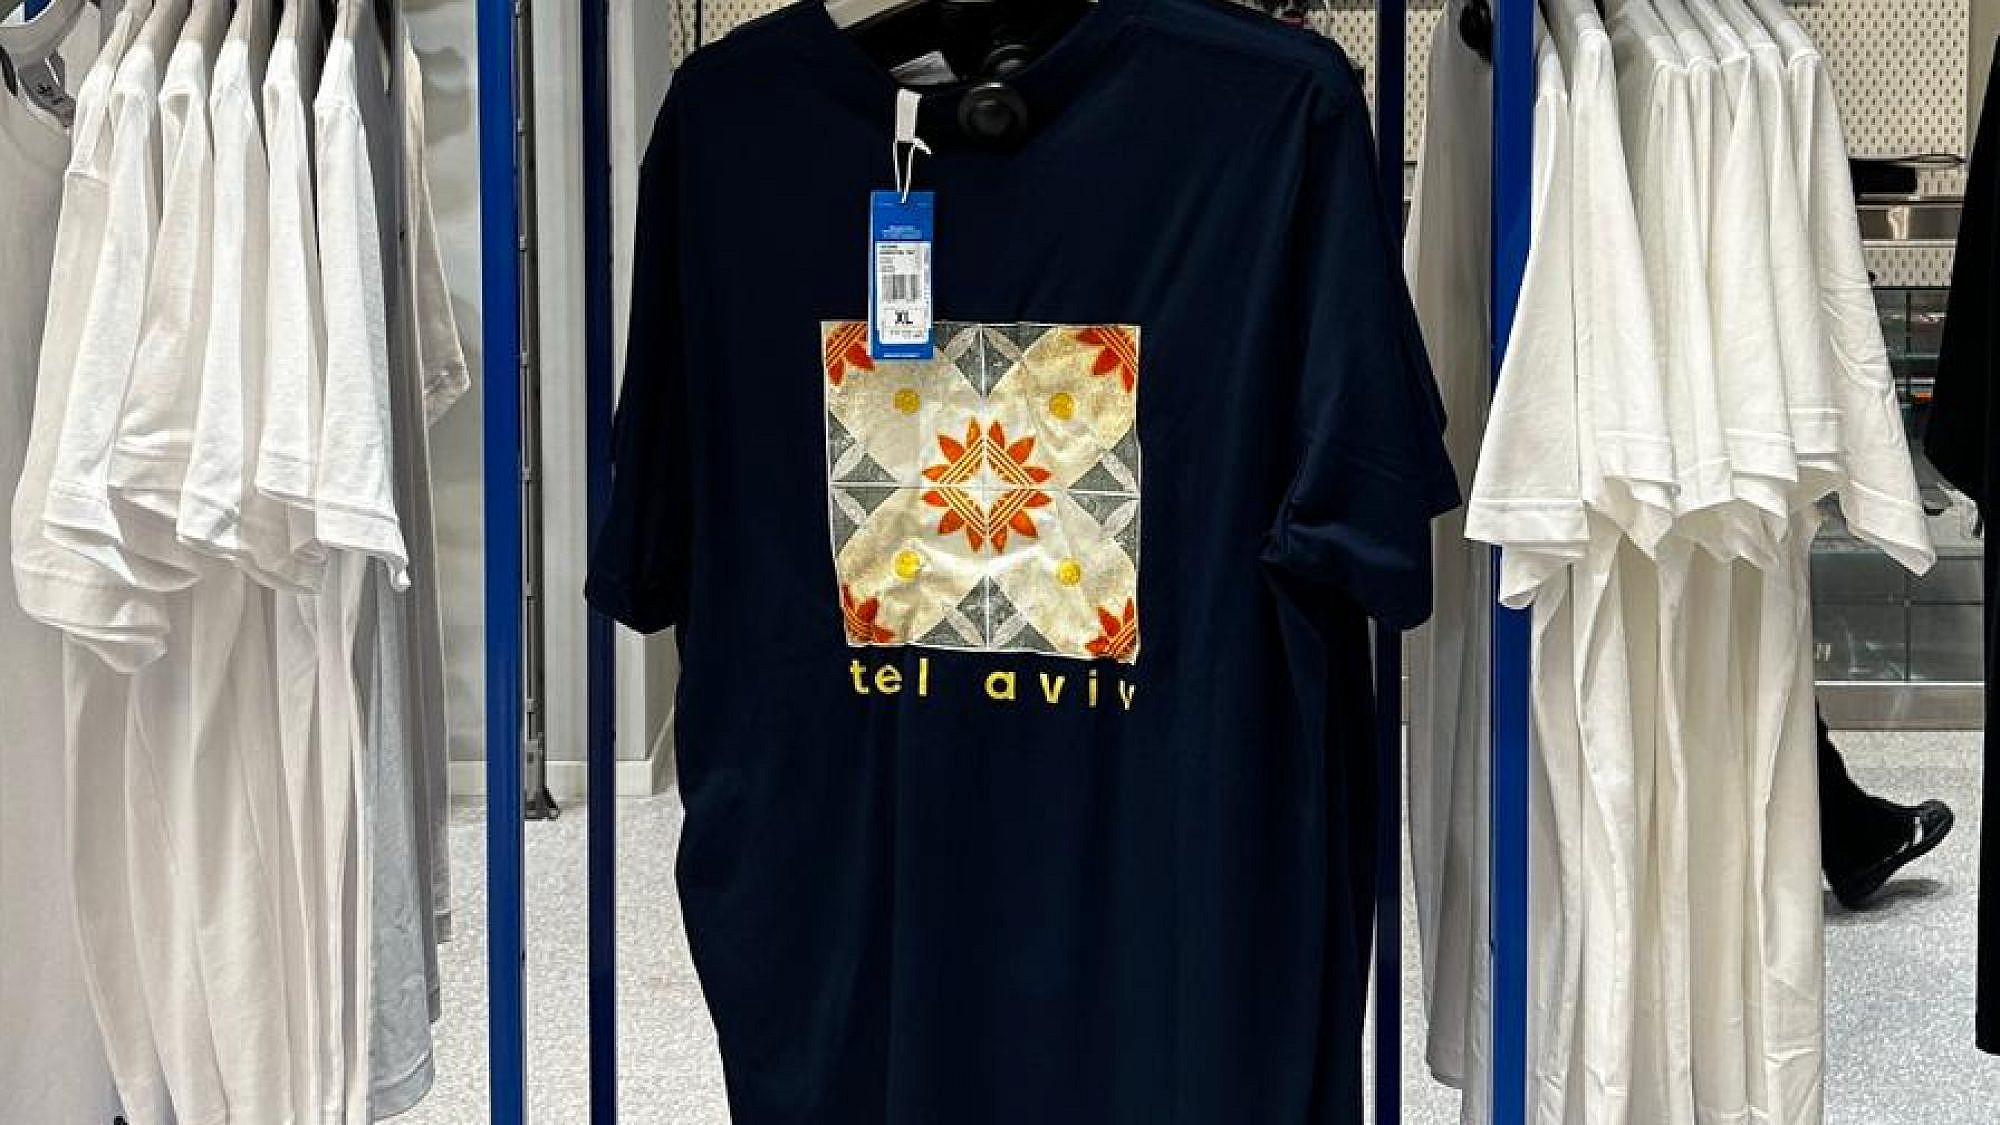 חולצת המרצפות של אביעד אמרגי. הקולקציה התל אביבית של אדידס. צילום: אביעד אמרגי